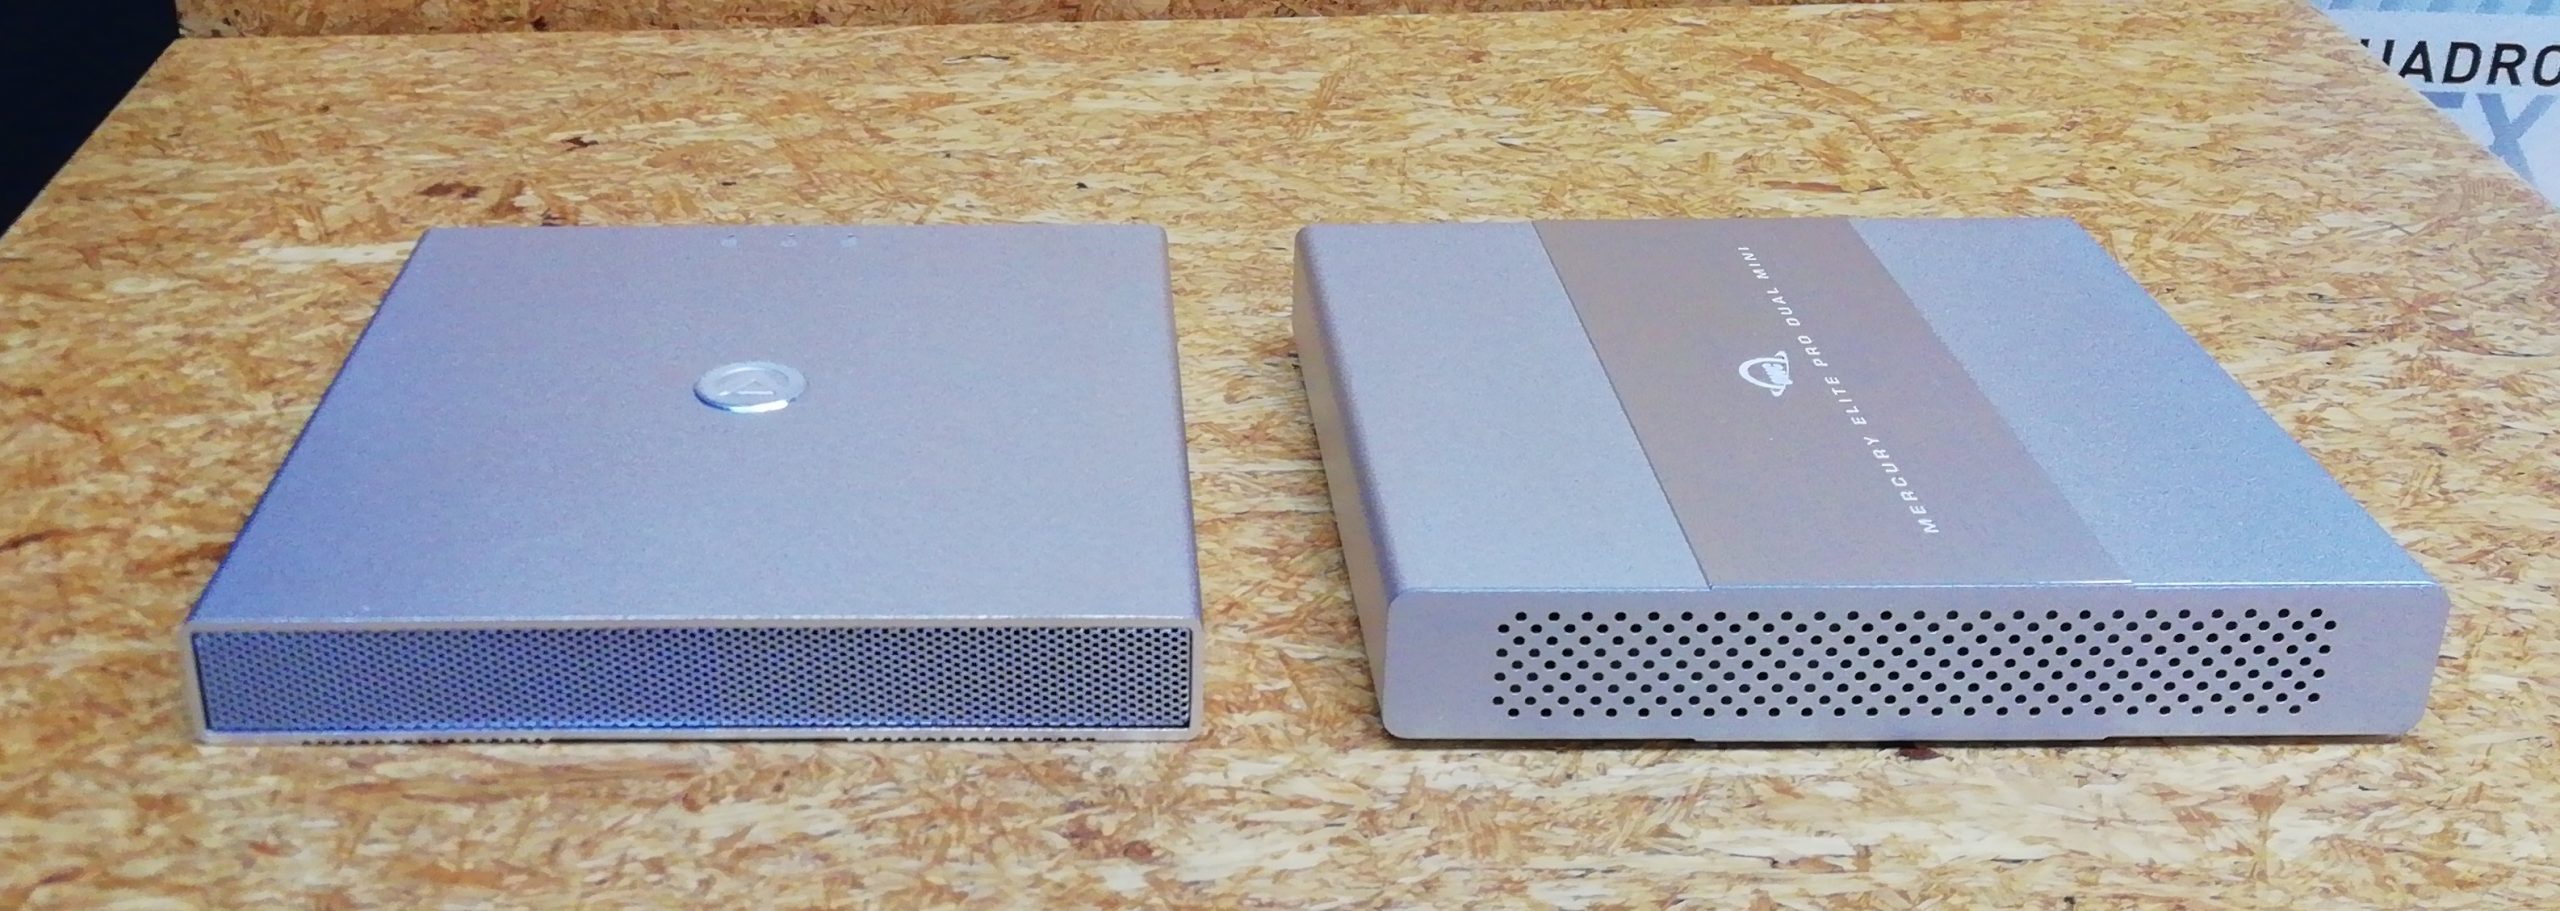 USB 3.1 Gen 2対応 RAID機能付きポータブルドライブケース「OWC 